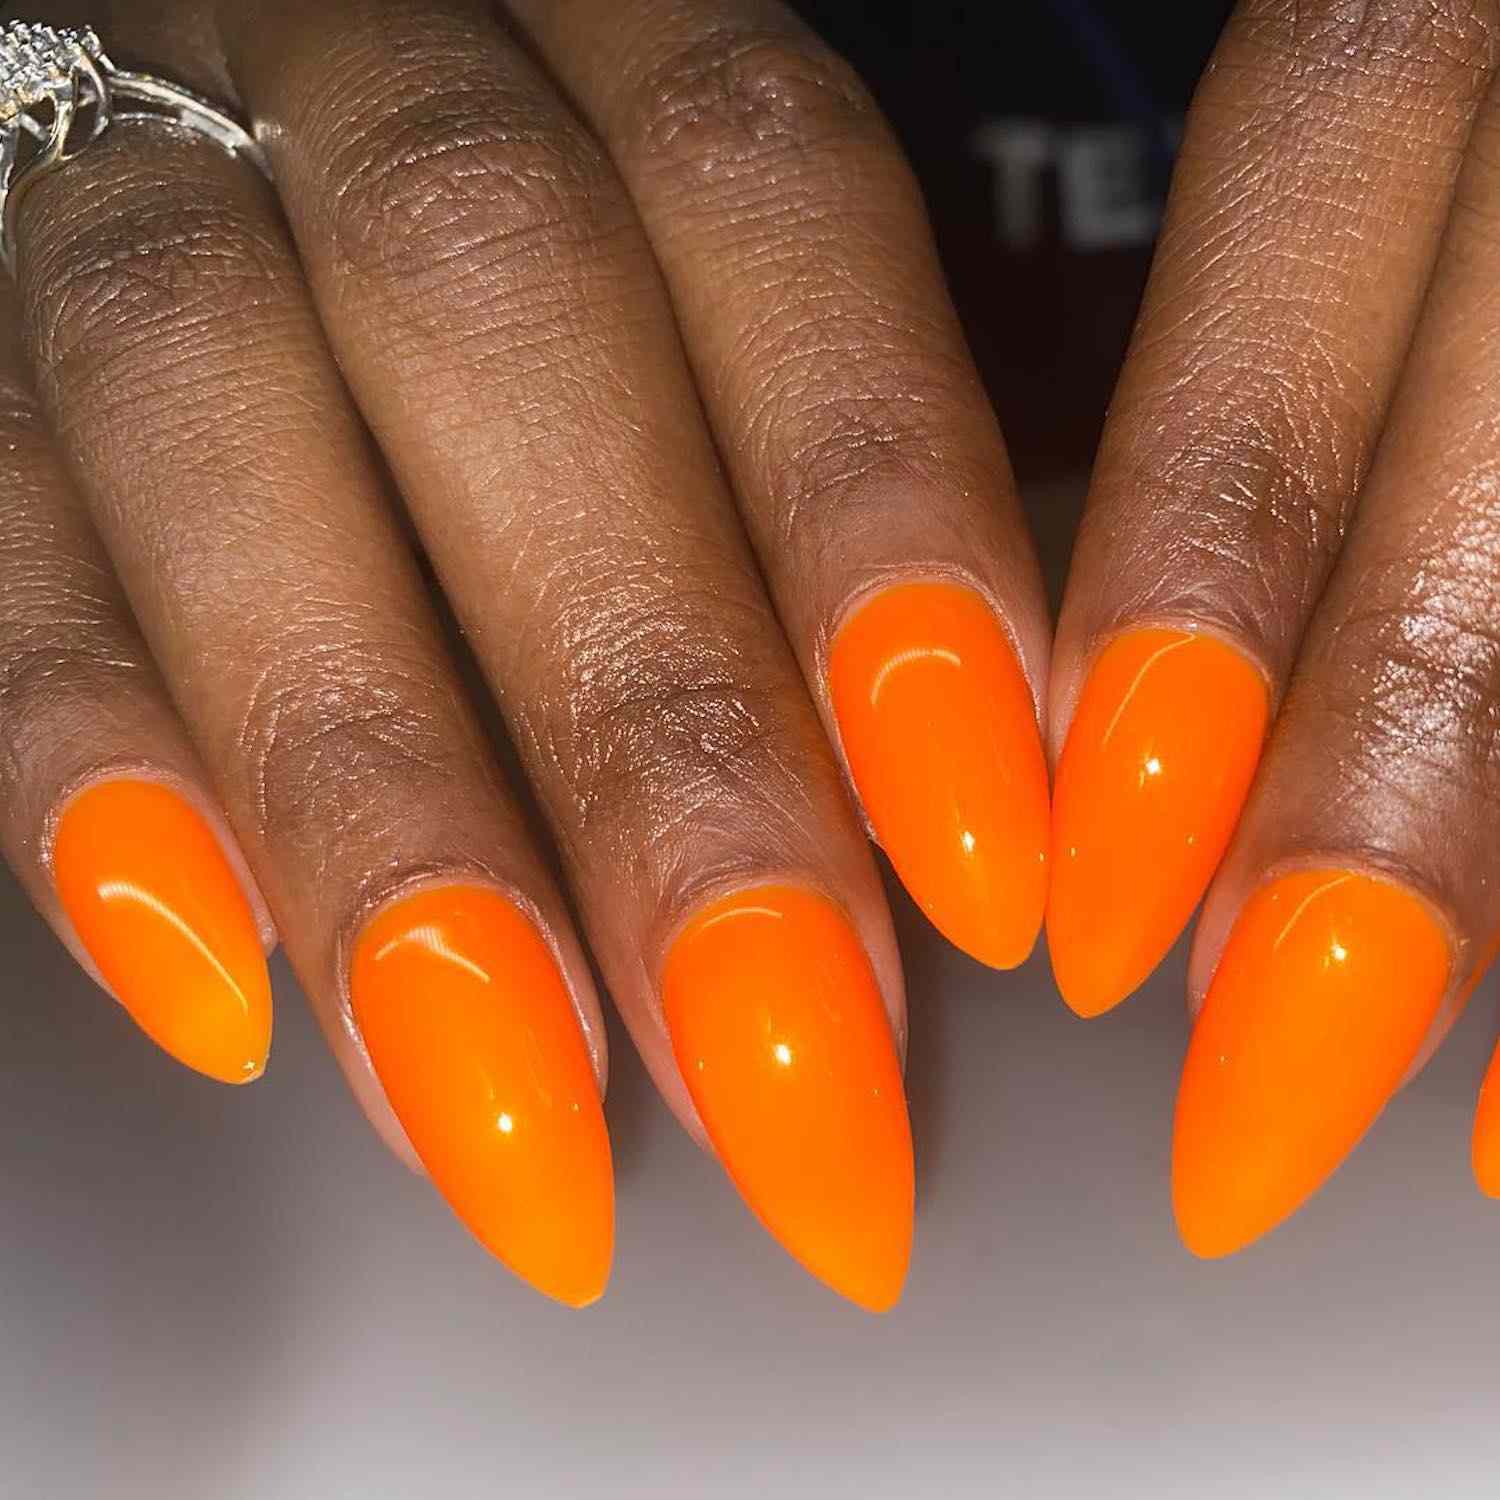 Manicure laranja brilhante em uma forma alongada em forma de amêndoa